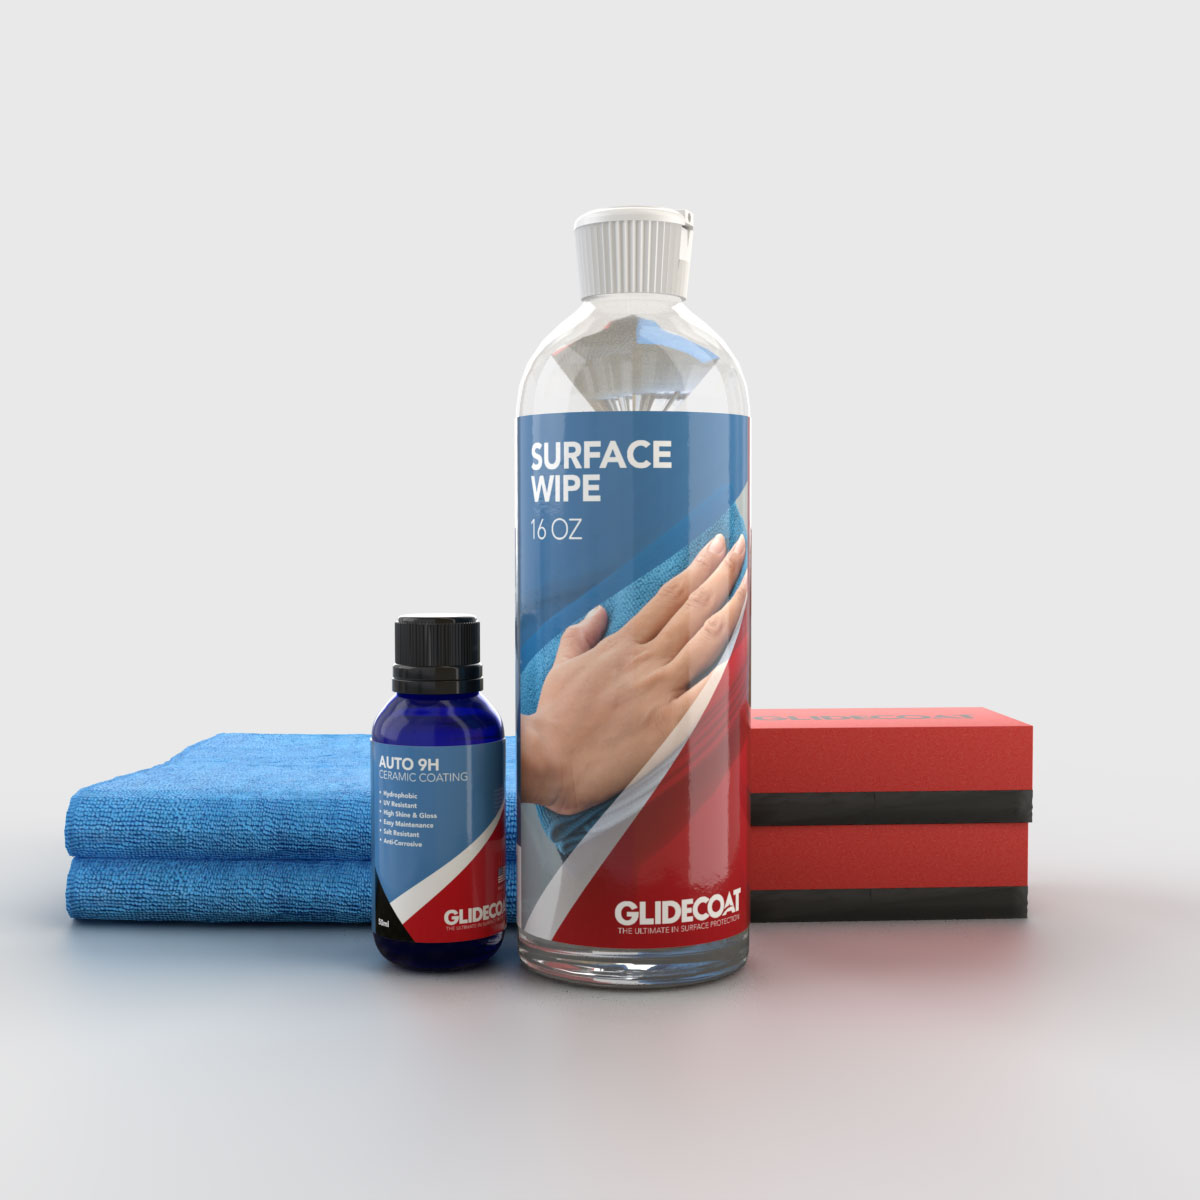 Buy 2020 Nano Ceramic Spray Coating for Cars,Ceramic Car Wax